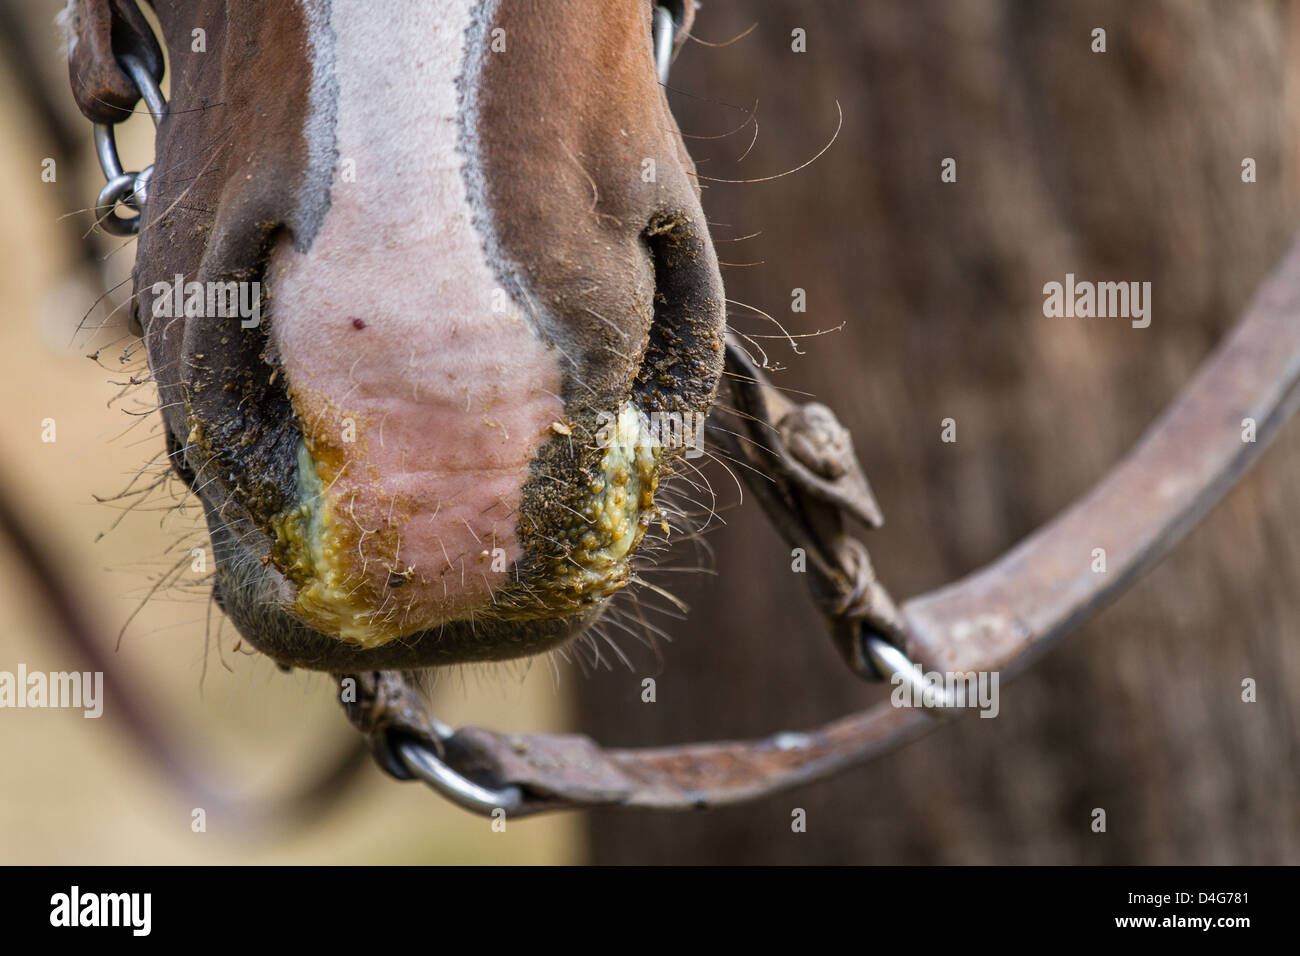 Cerca de un caballo caballo enfermo con gripe (influenza equina) y una secreción nasal de color verde moco, Patagonia, América del Sur Foto de stock